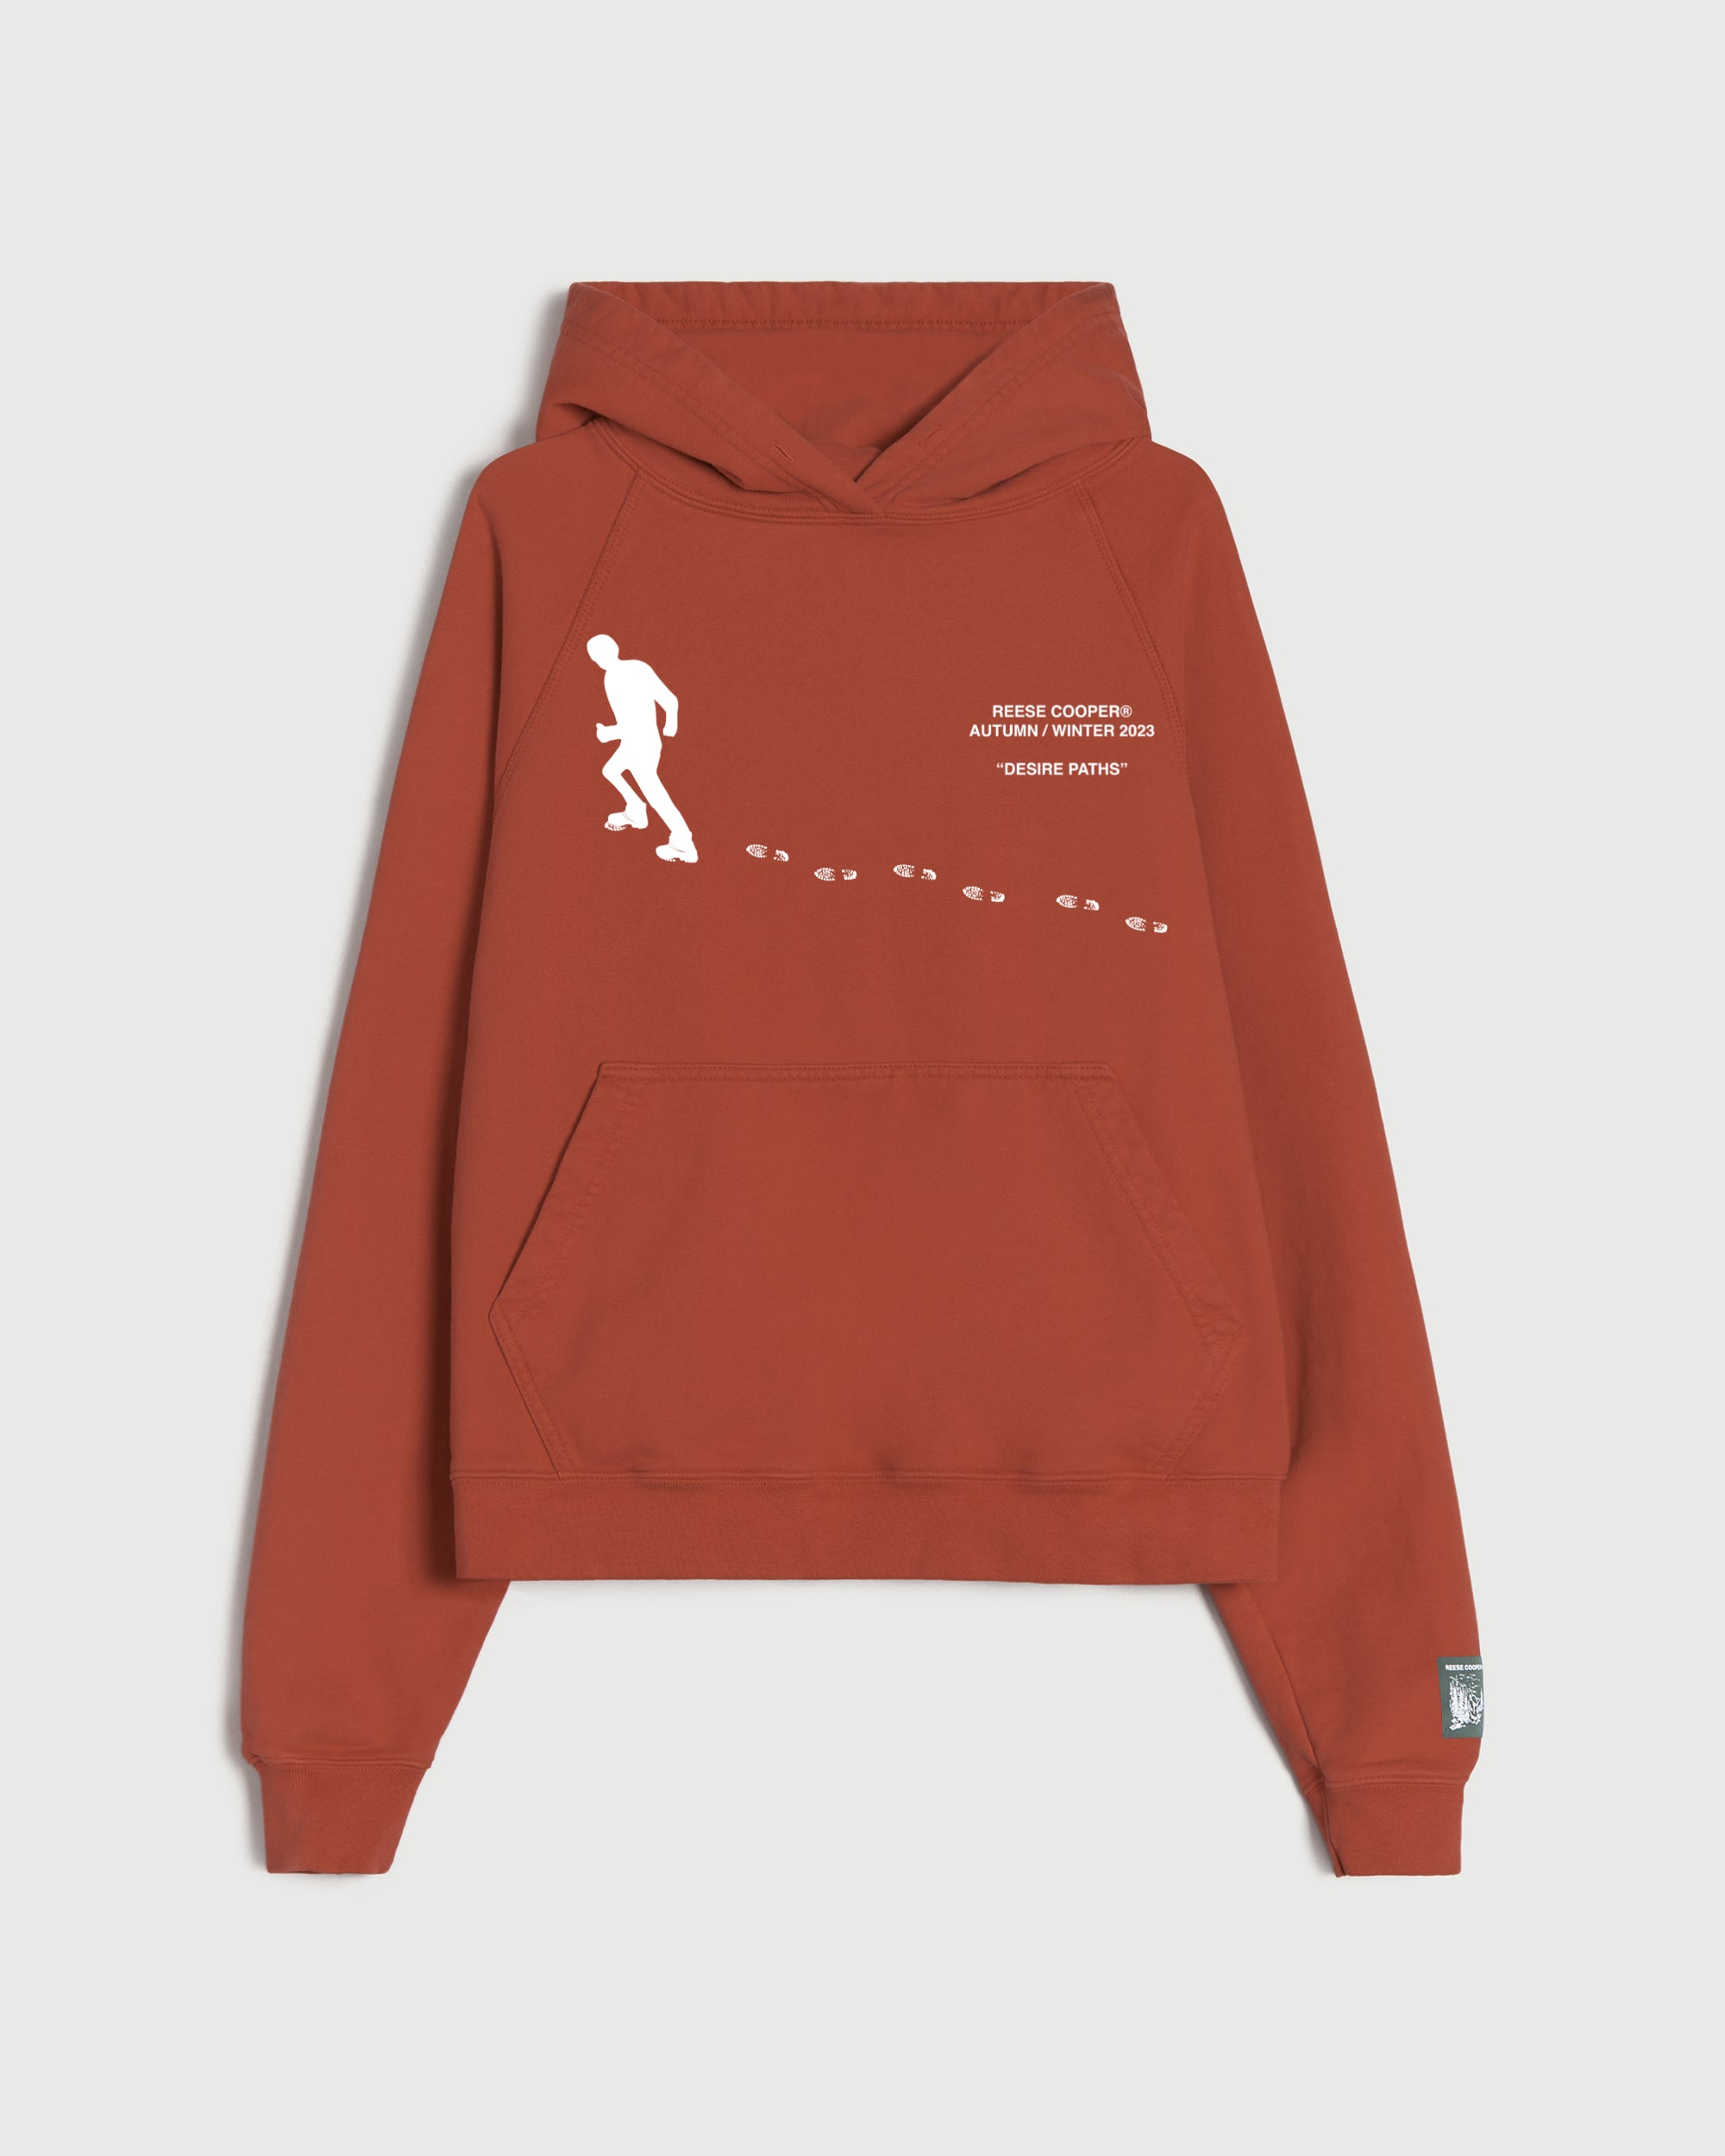 Desire Paths Hooded Sweatshirt in Burnt Orange – REESE COOPER®